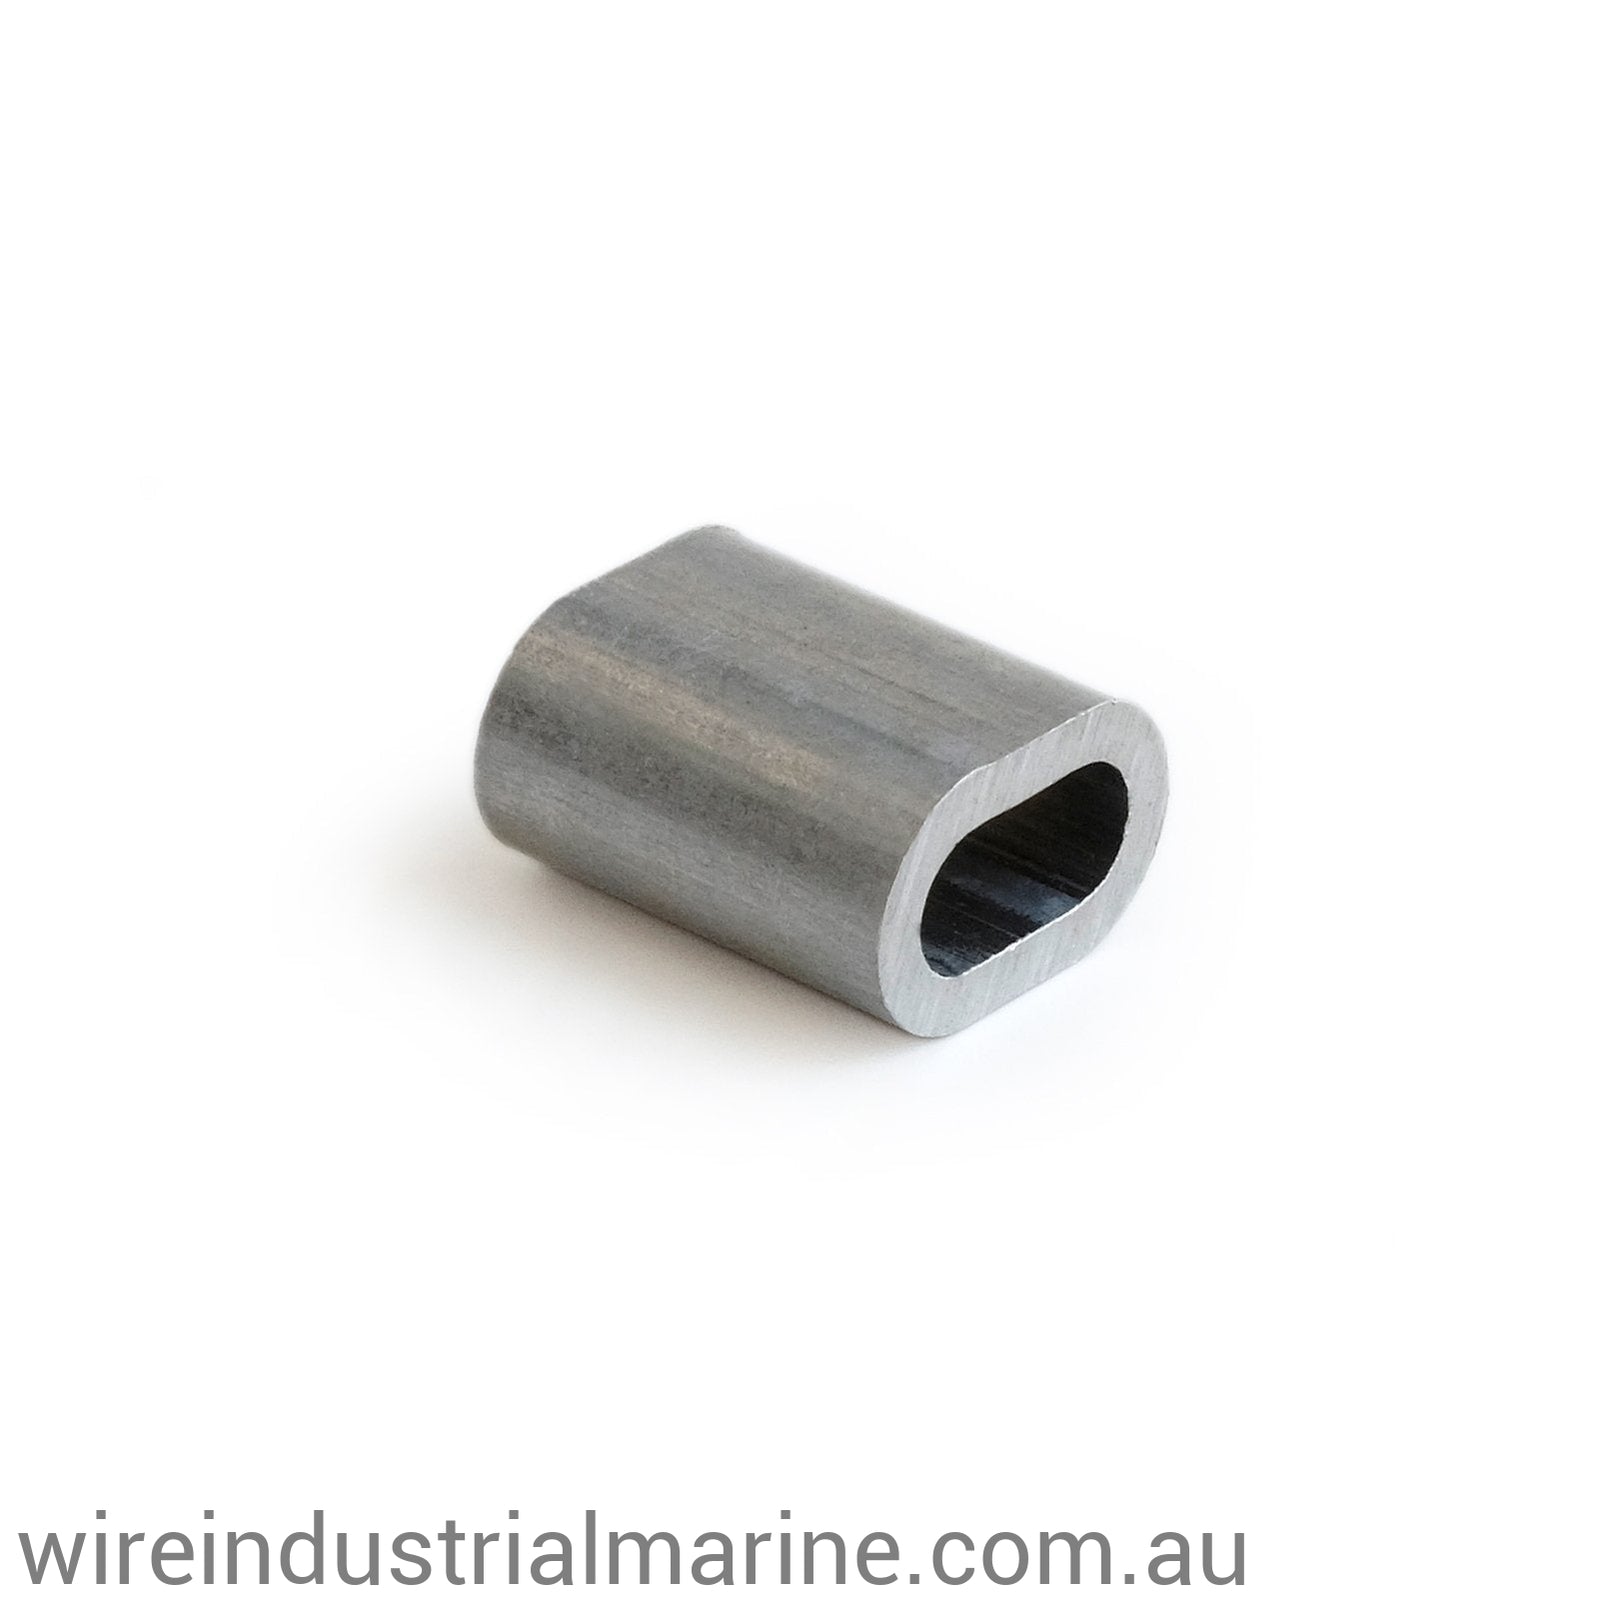 2.5mm ALLOY-DIN Code machine press ferrule for galvanised wire-wireindustrialmarine